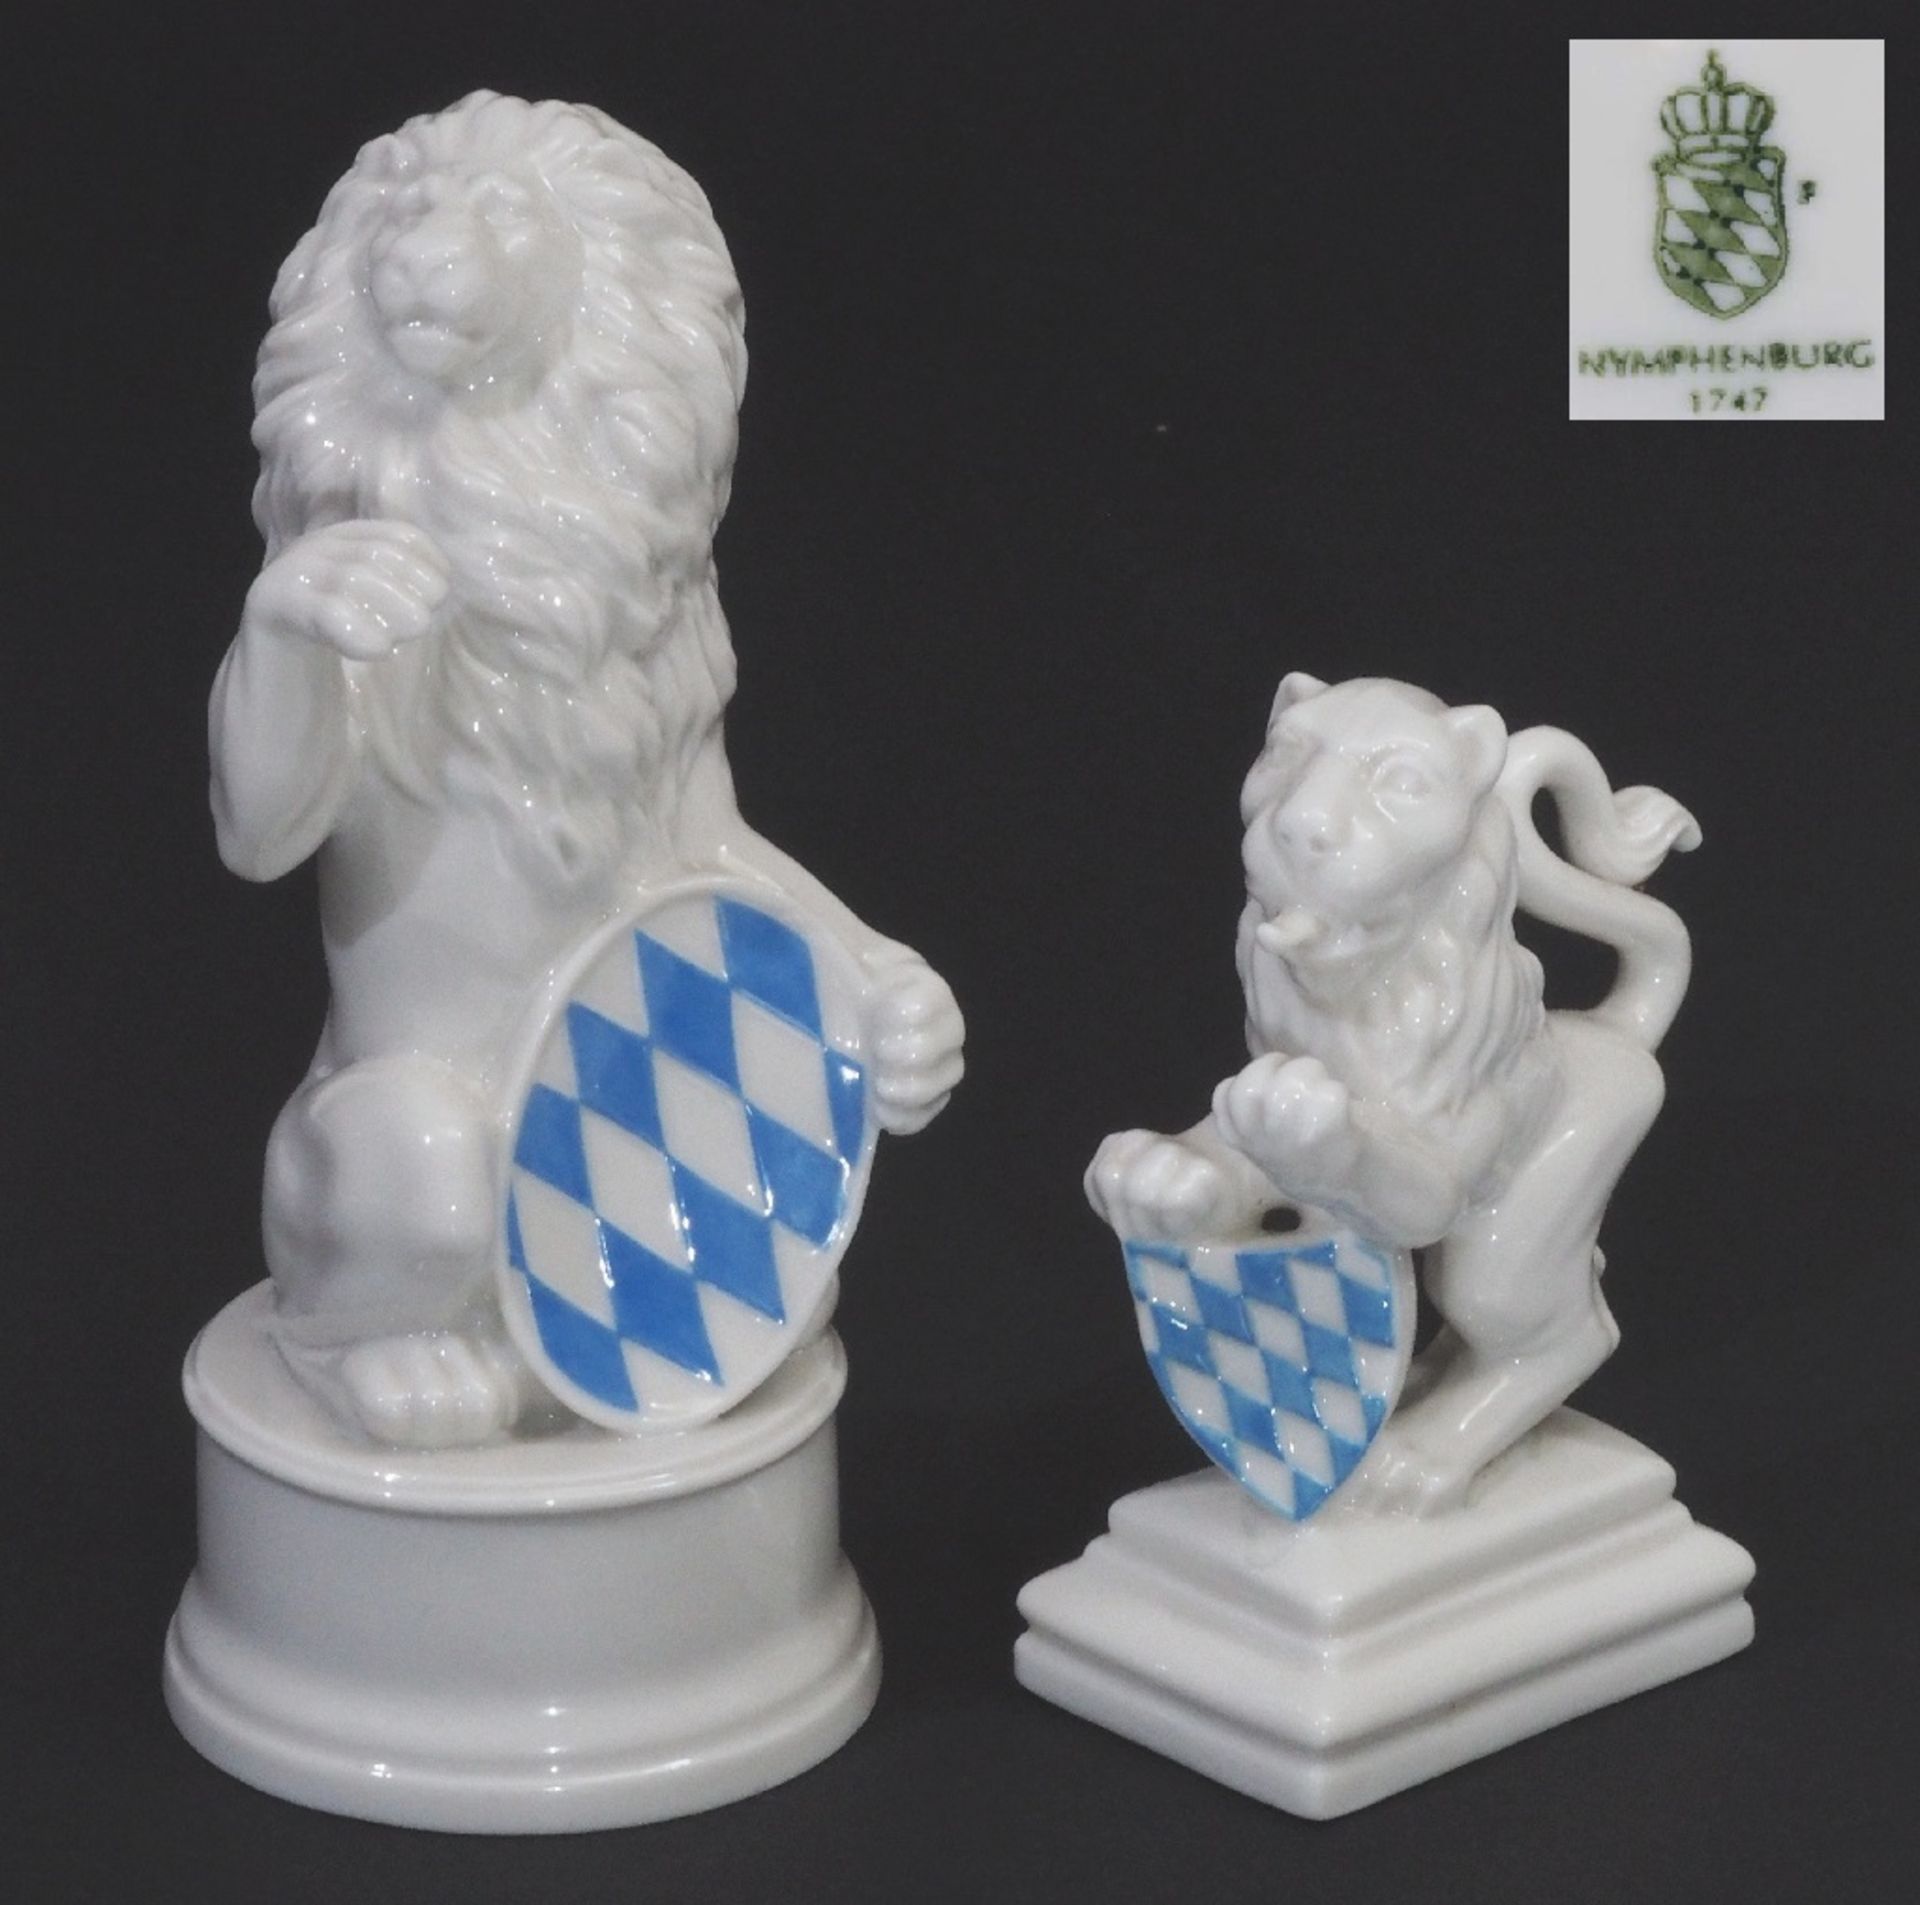 Zwei Löwen mit bayerischem Wappen.  NYMPHENBURG. 